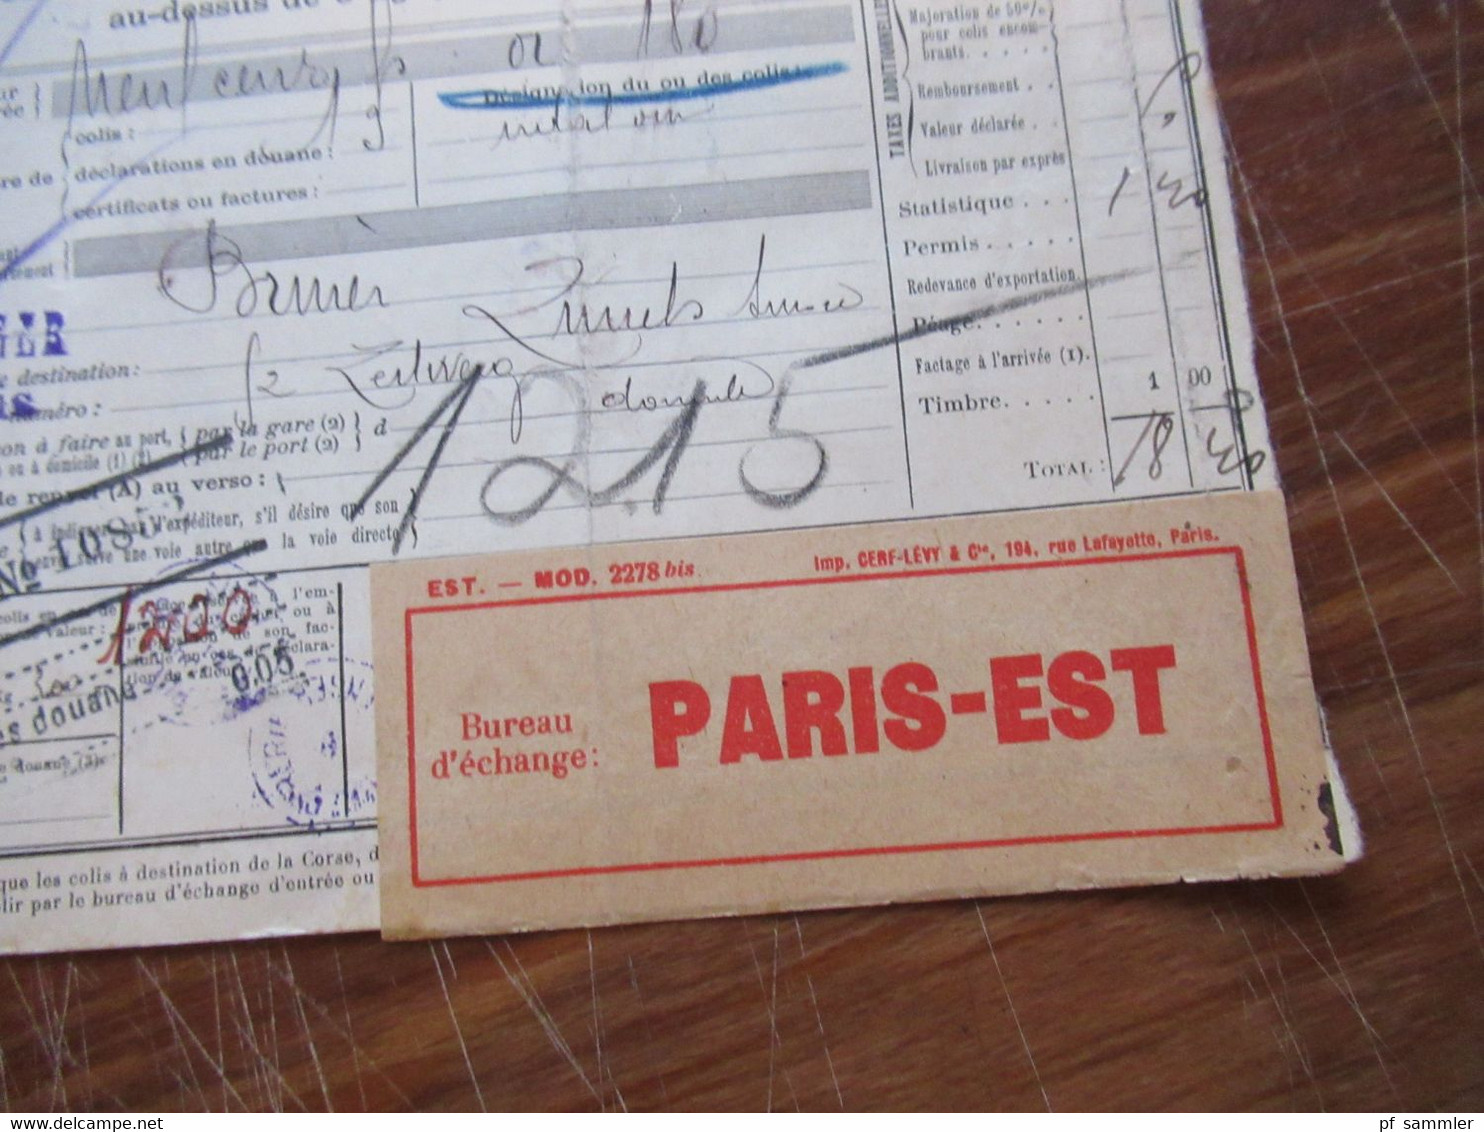 Frankreich 1927 Auslandspaketkarte Colis Postaux In Die Schweiz Valeur Declaree / Paris - Est Mit Vielen Stempeln!! - Storia Postale